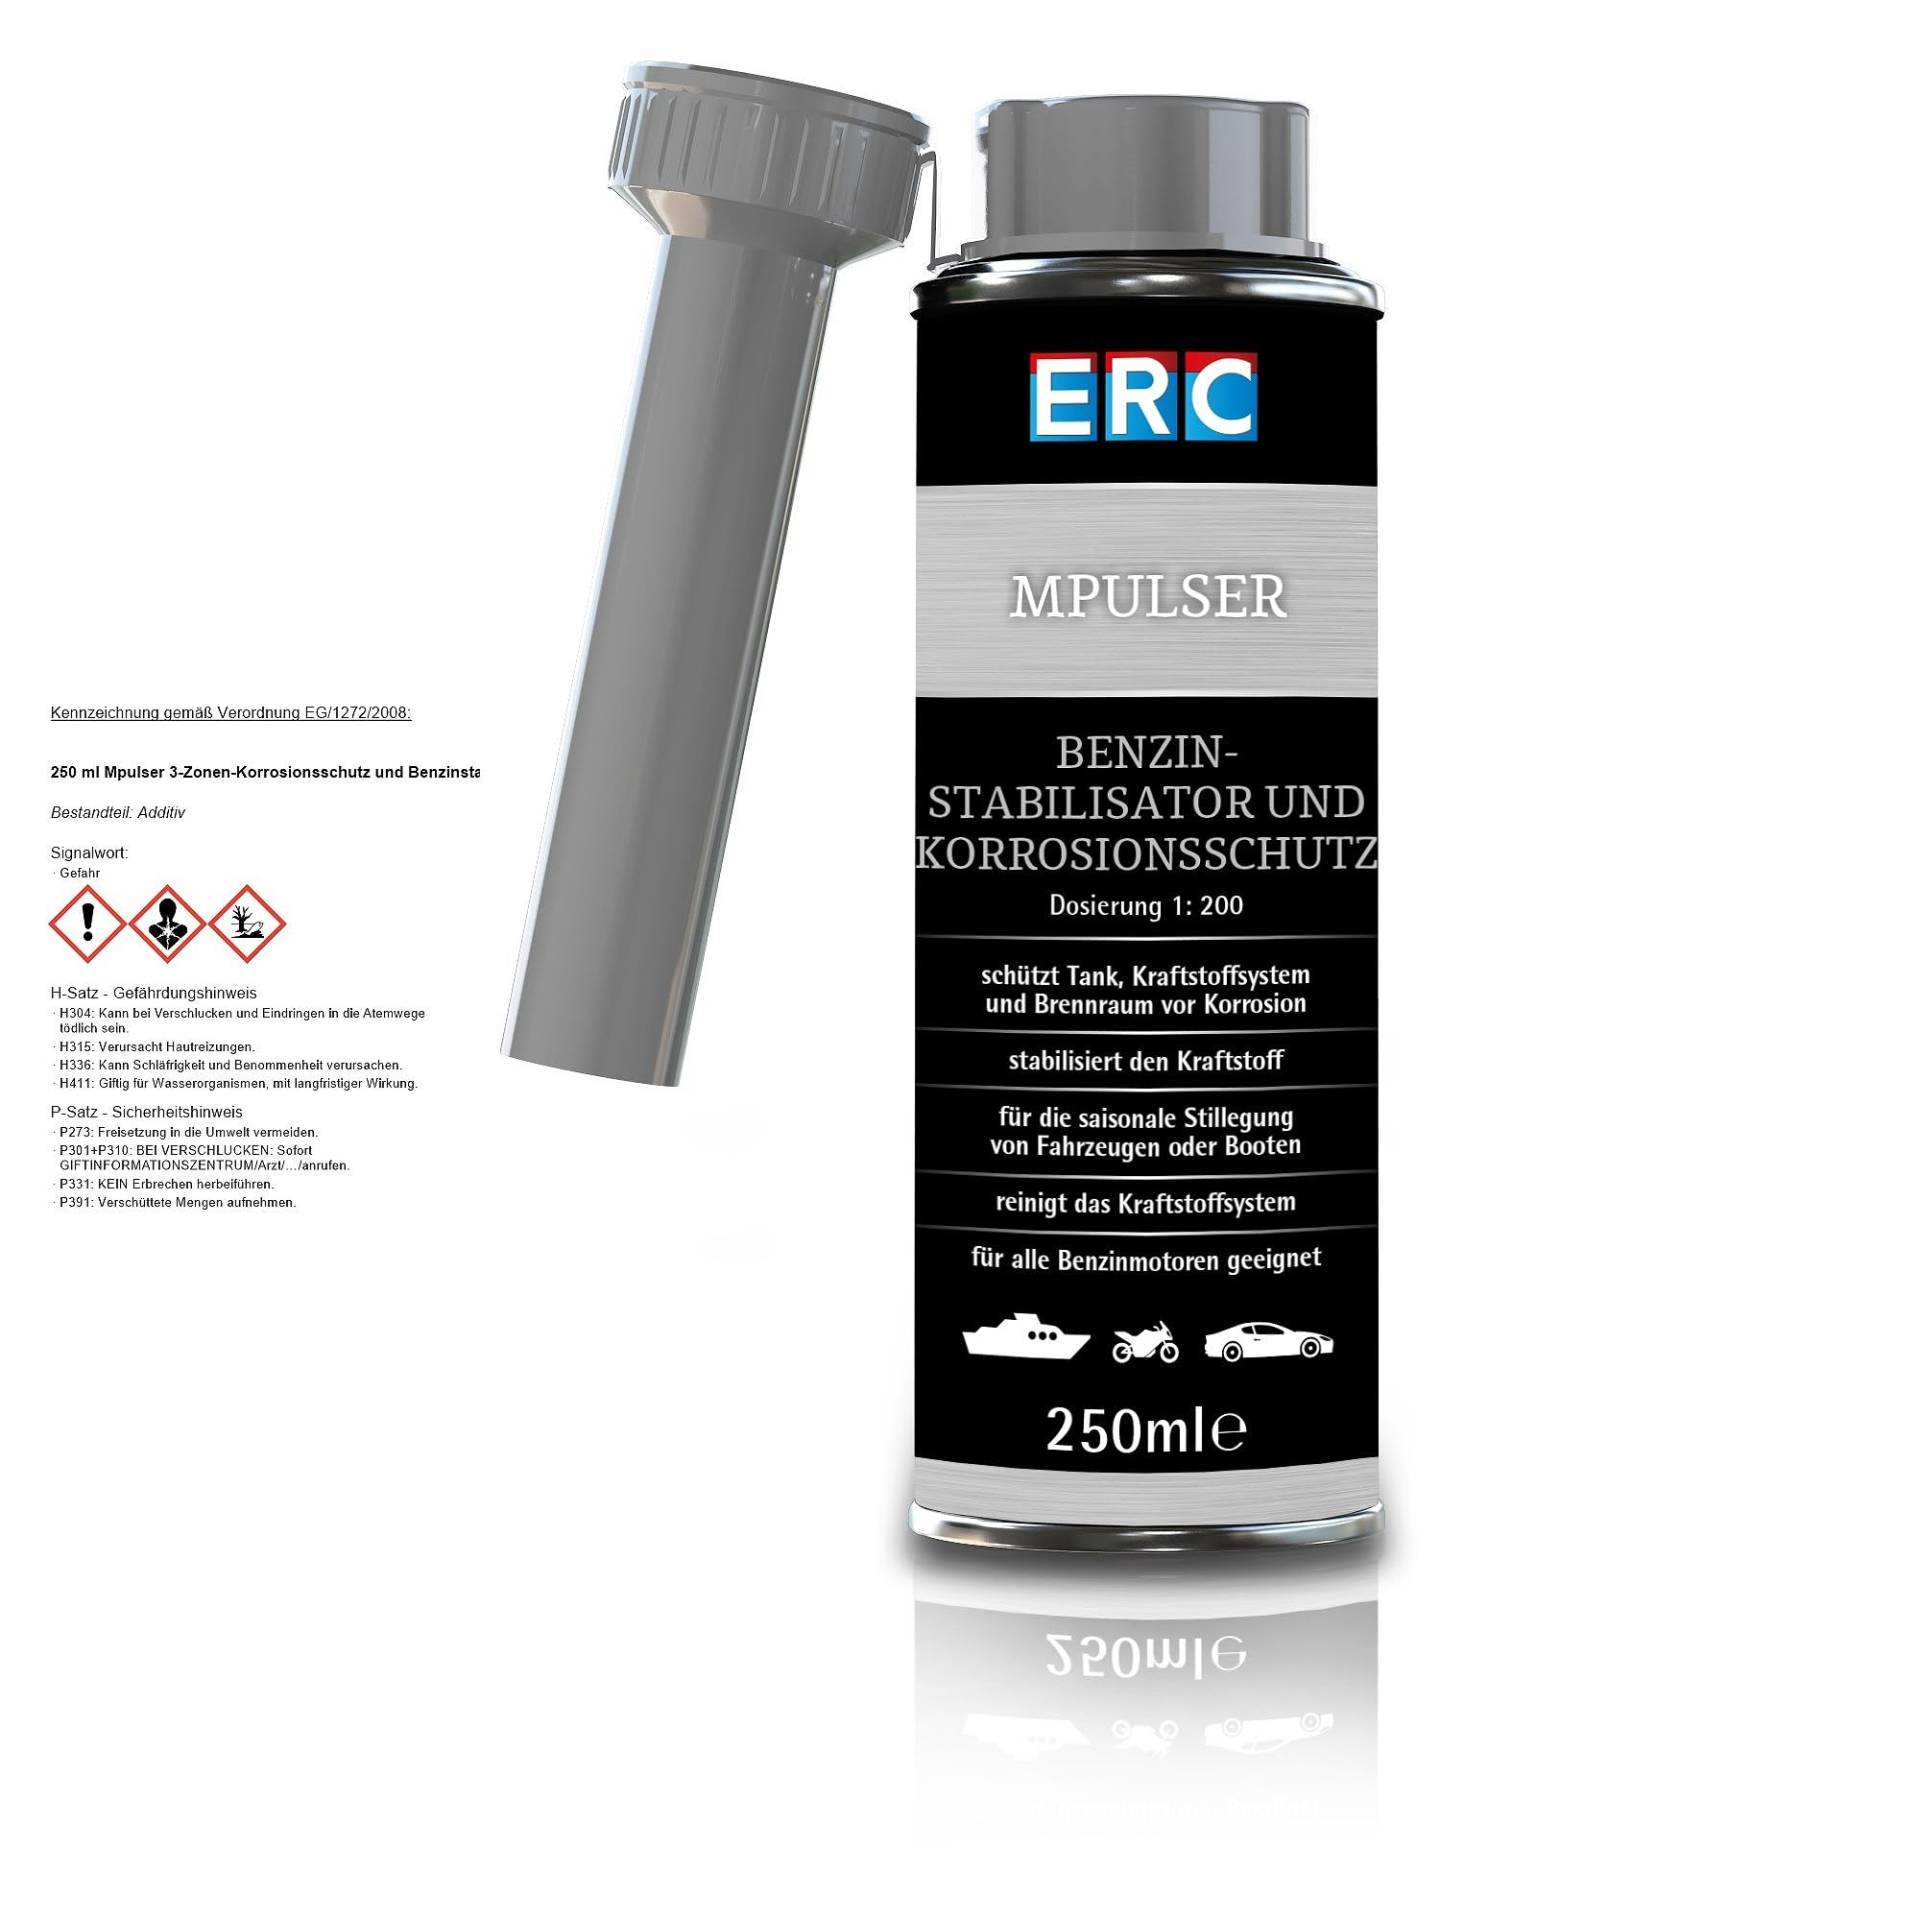 ERC MPULSER Benzin- Stabilisator und Korrosionsschutz 250ml Dosierung 1:200 von ERC